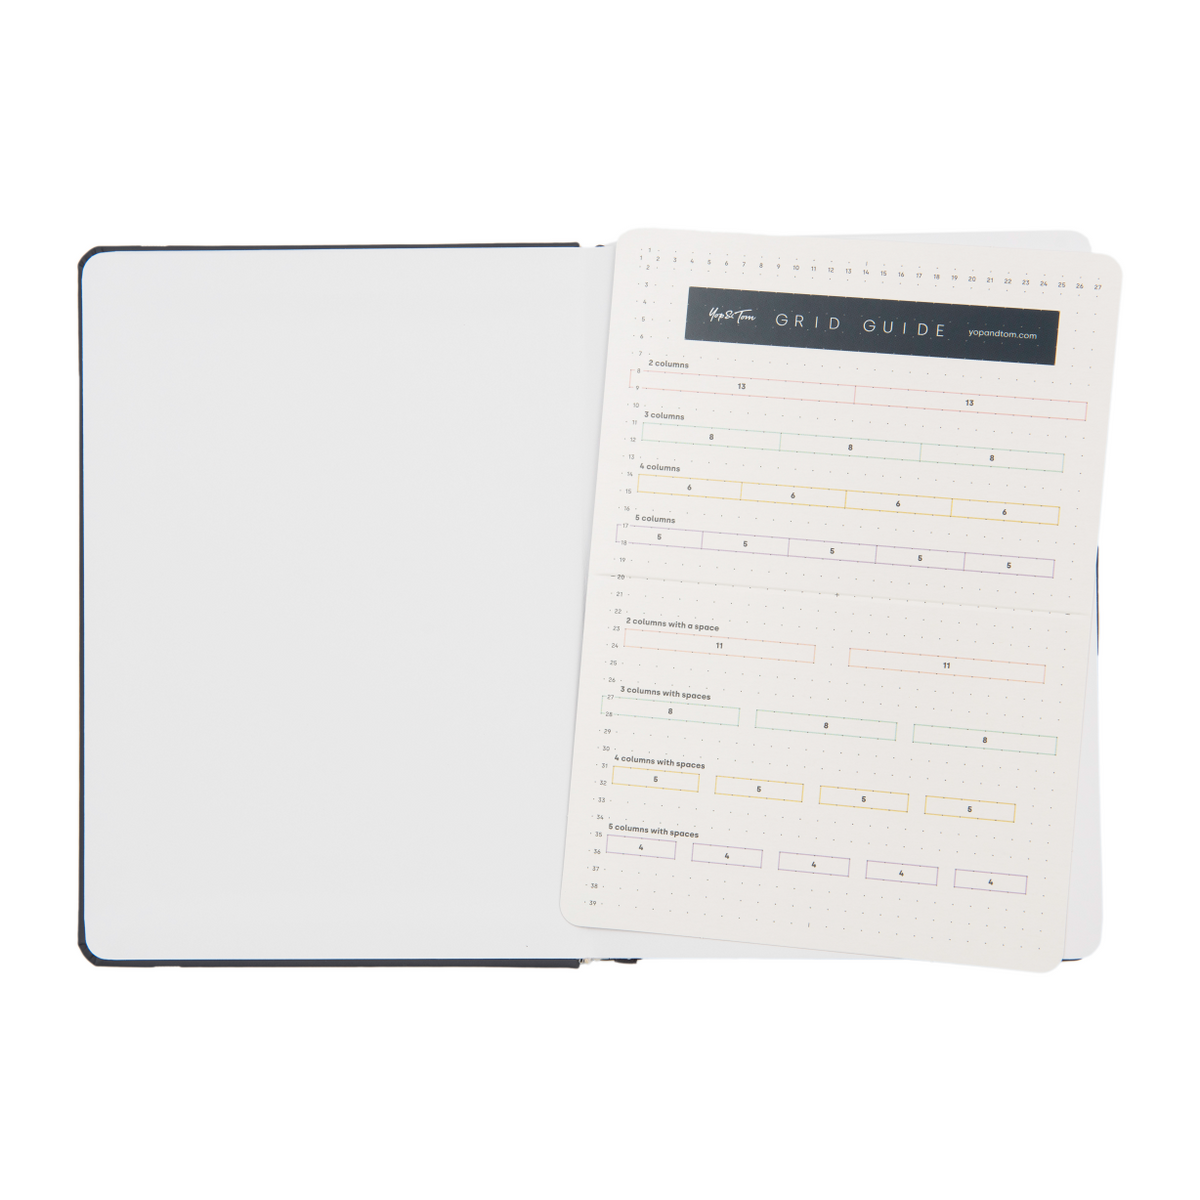 Le Carnet A5 Canvas Dot Grid Pistes Notebook by Papier Tigre